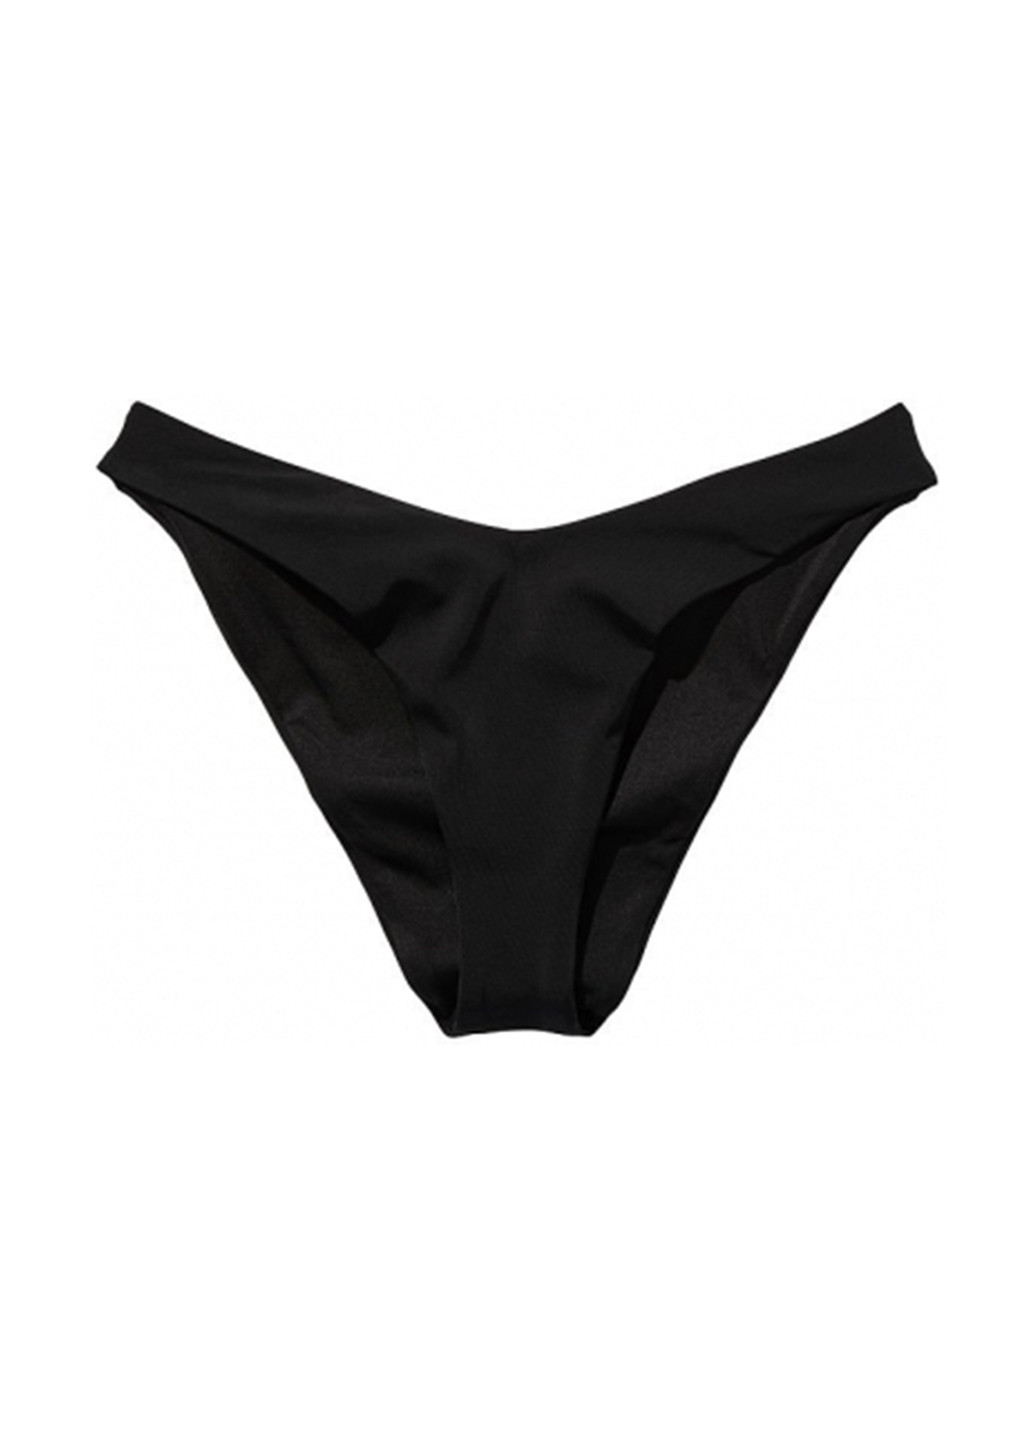 Черный летний купальник (лиф, трусы) бандо, раздельный Victoria's Secret